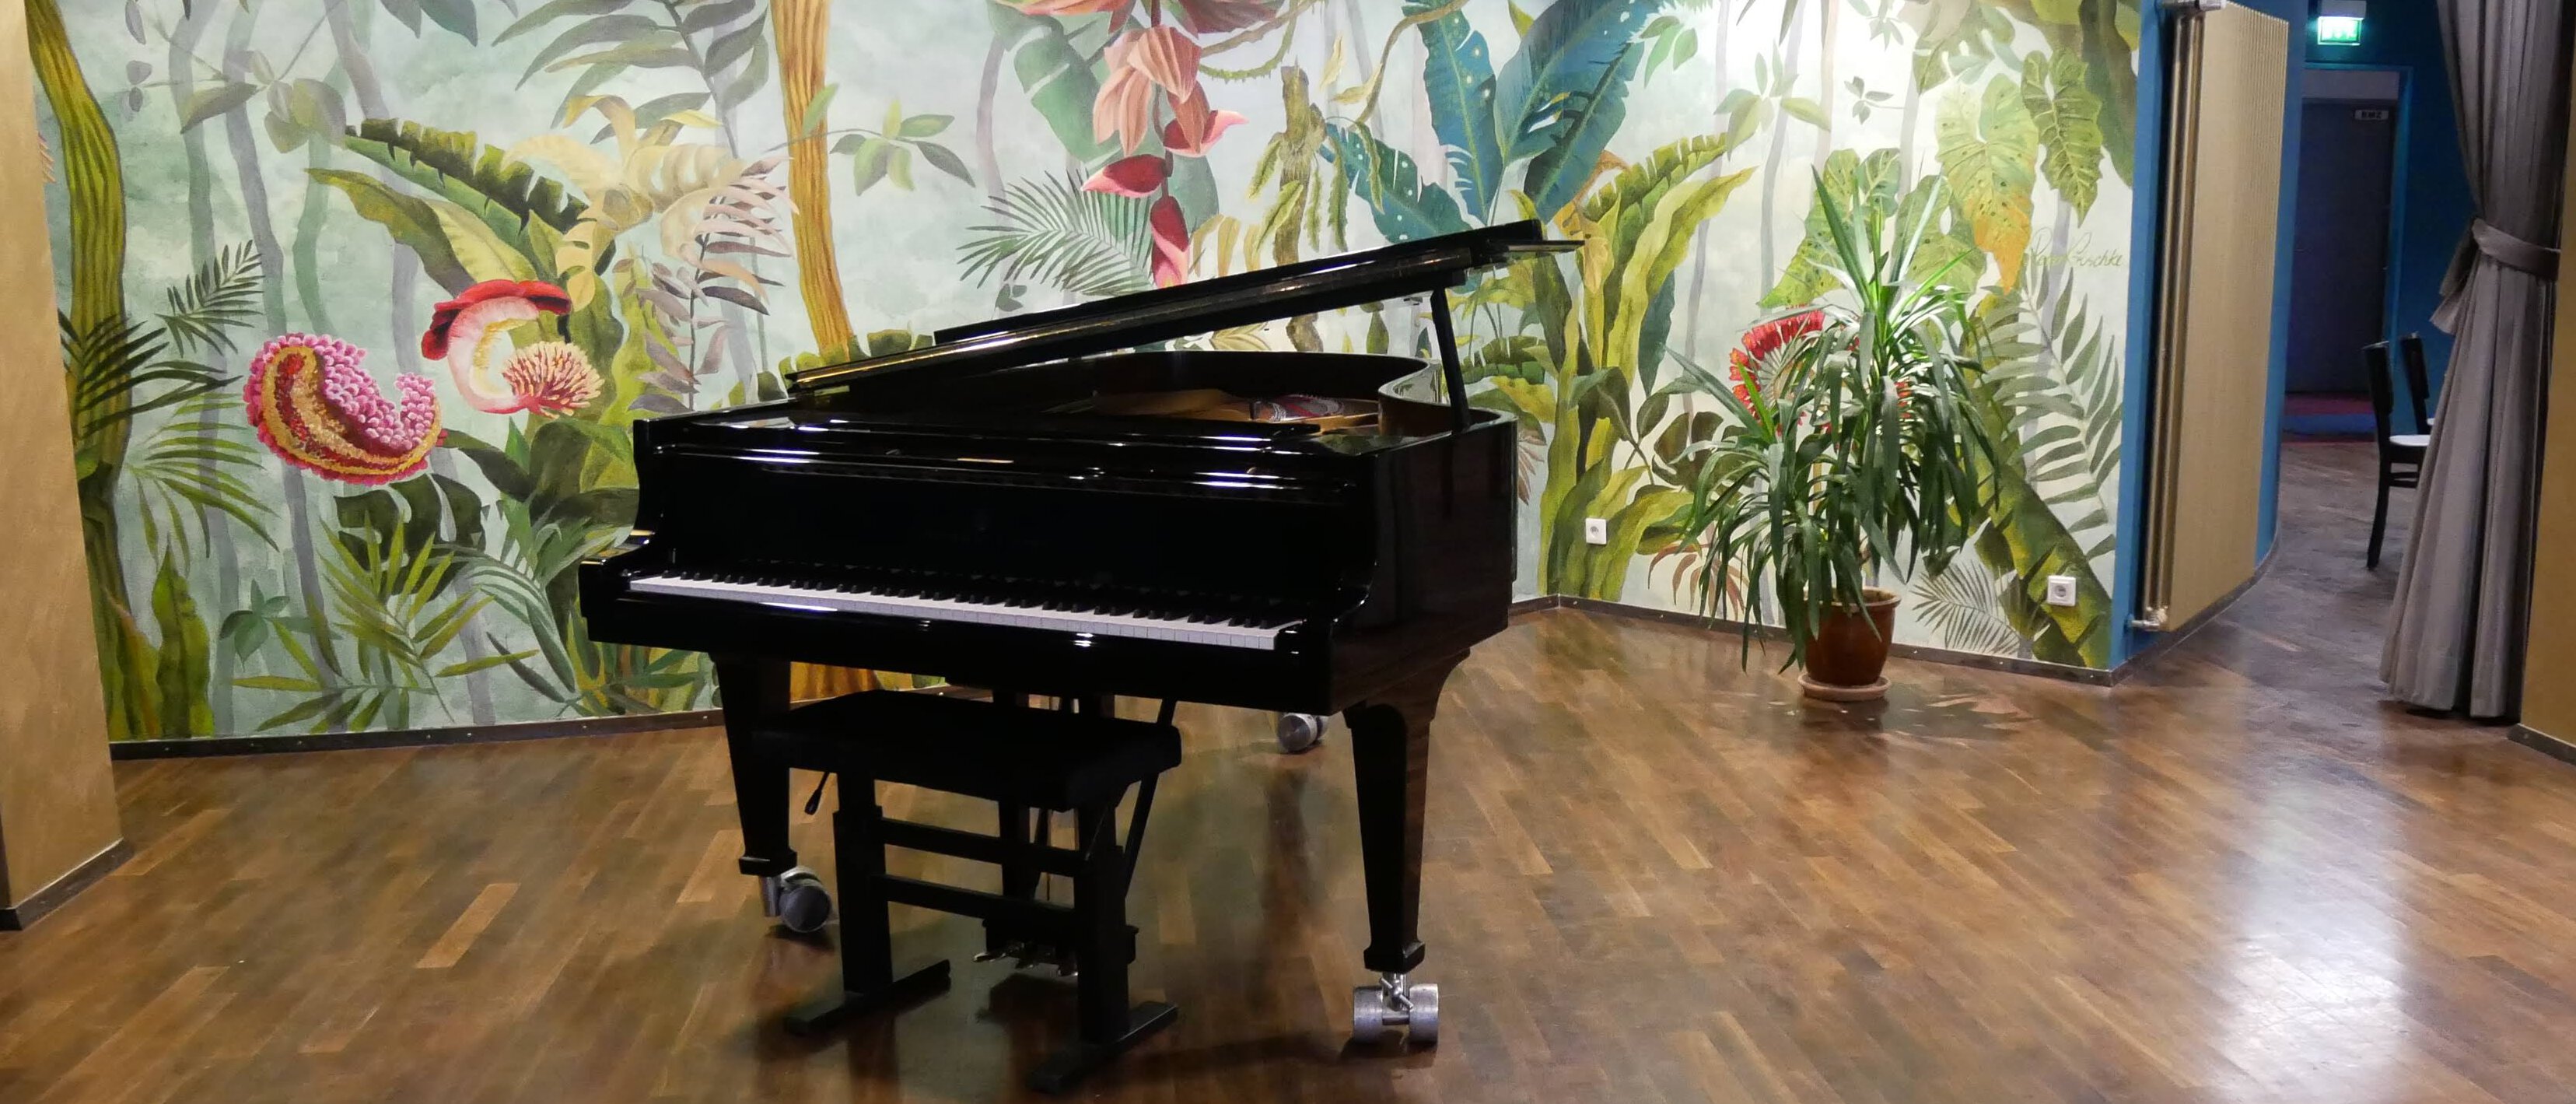 Ein leeres Piano im Foyer der Tafelhalle.